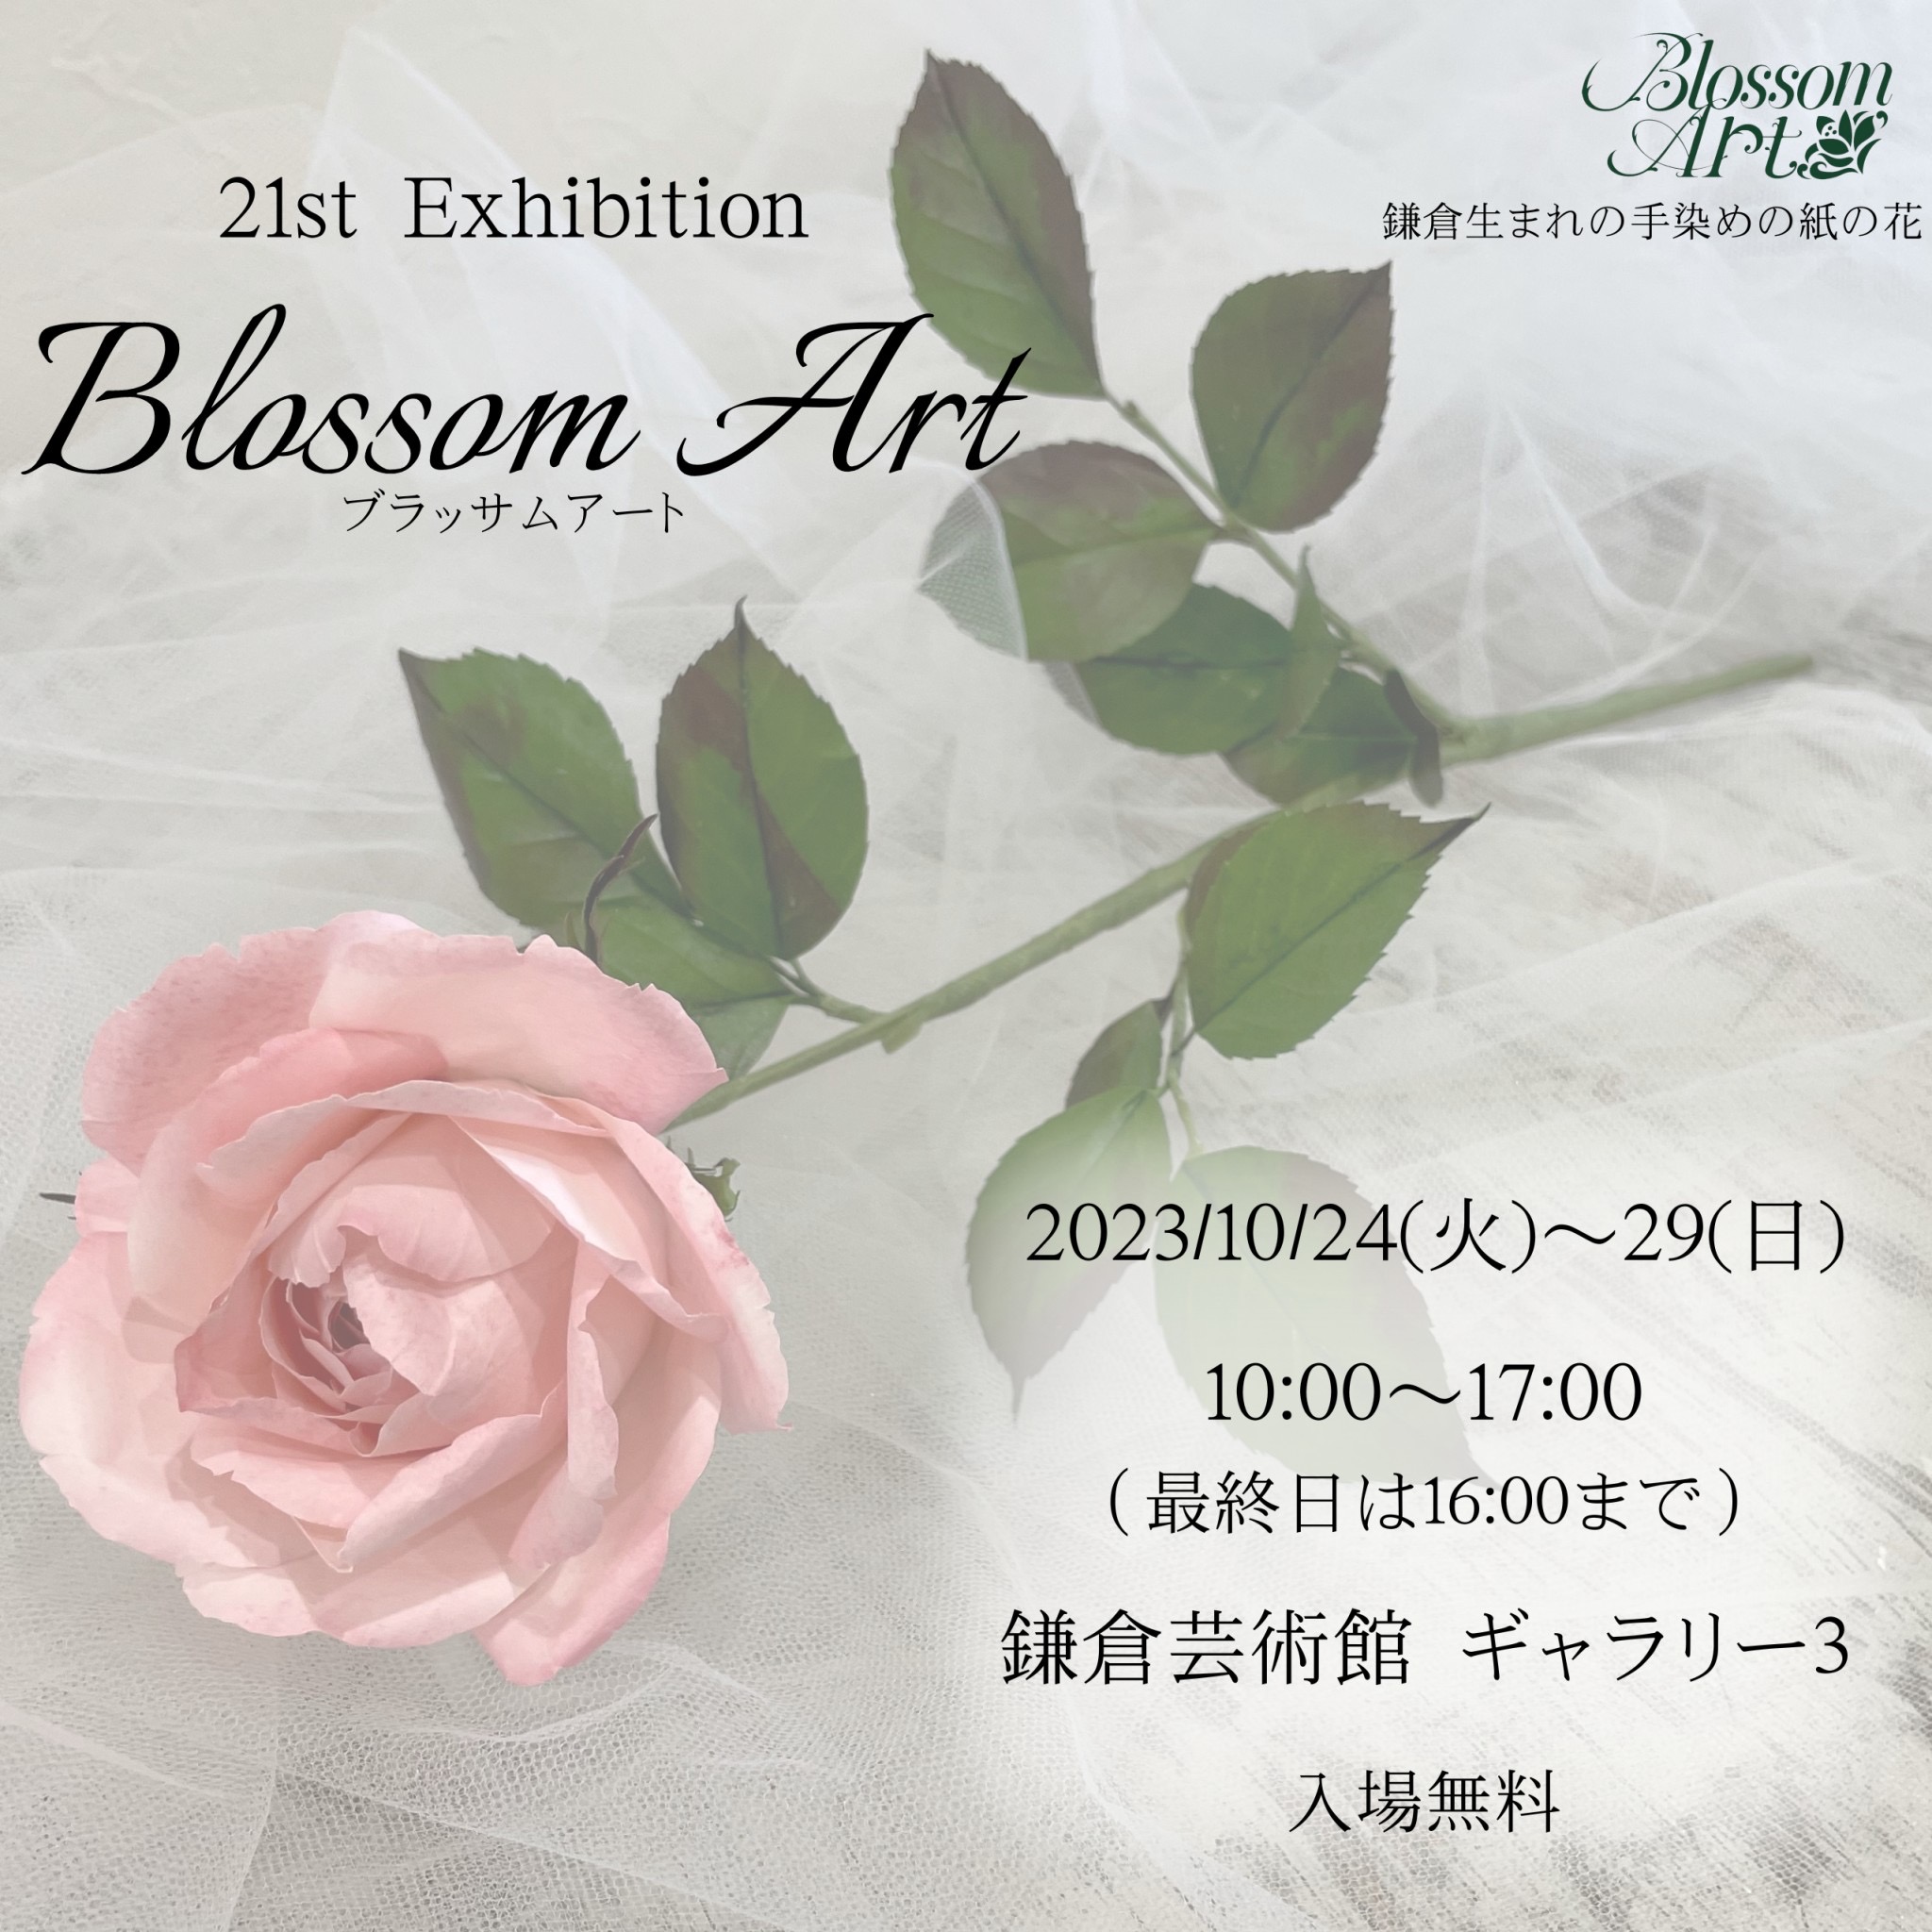 21st  Exhibition  Blossom Art のお知らせ